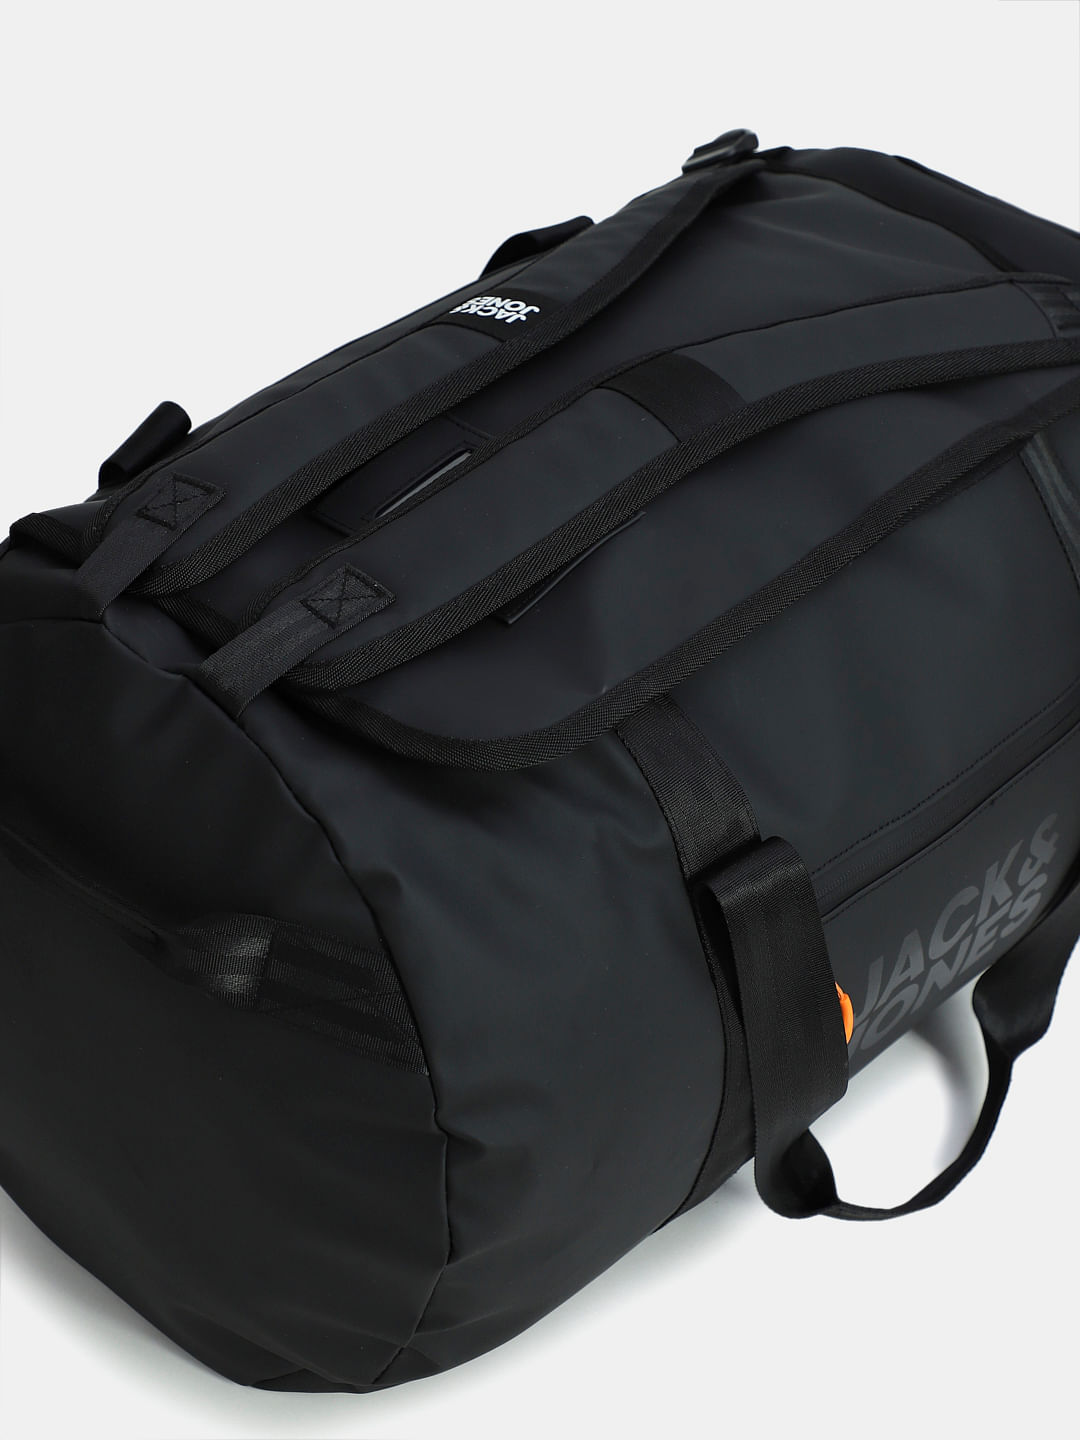 IFARADAY 30 inch Foldable Duffle Bag Lightweight Luggage Bag India | Ubuy